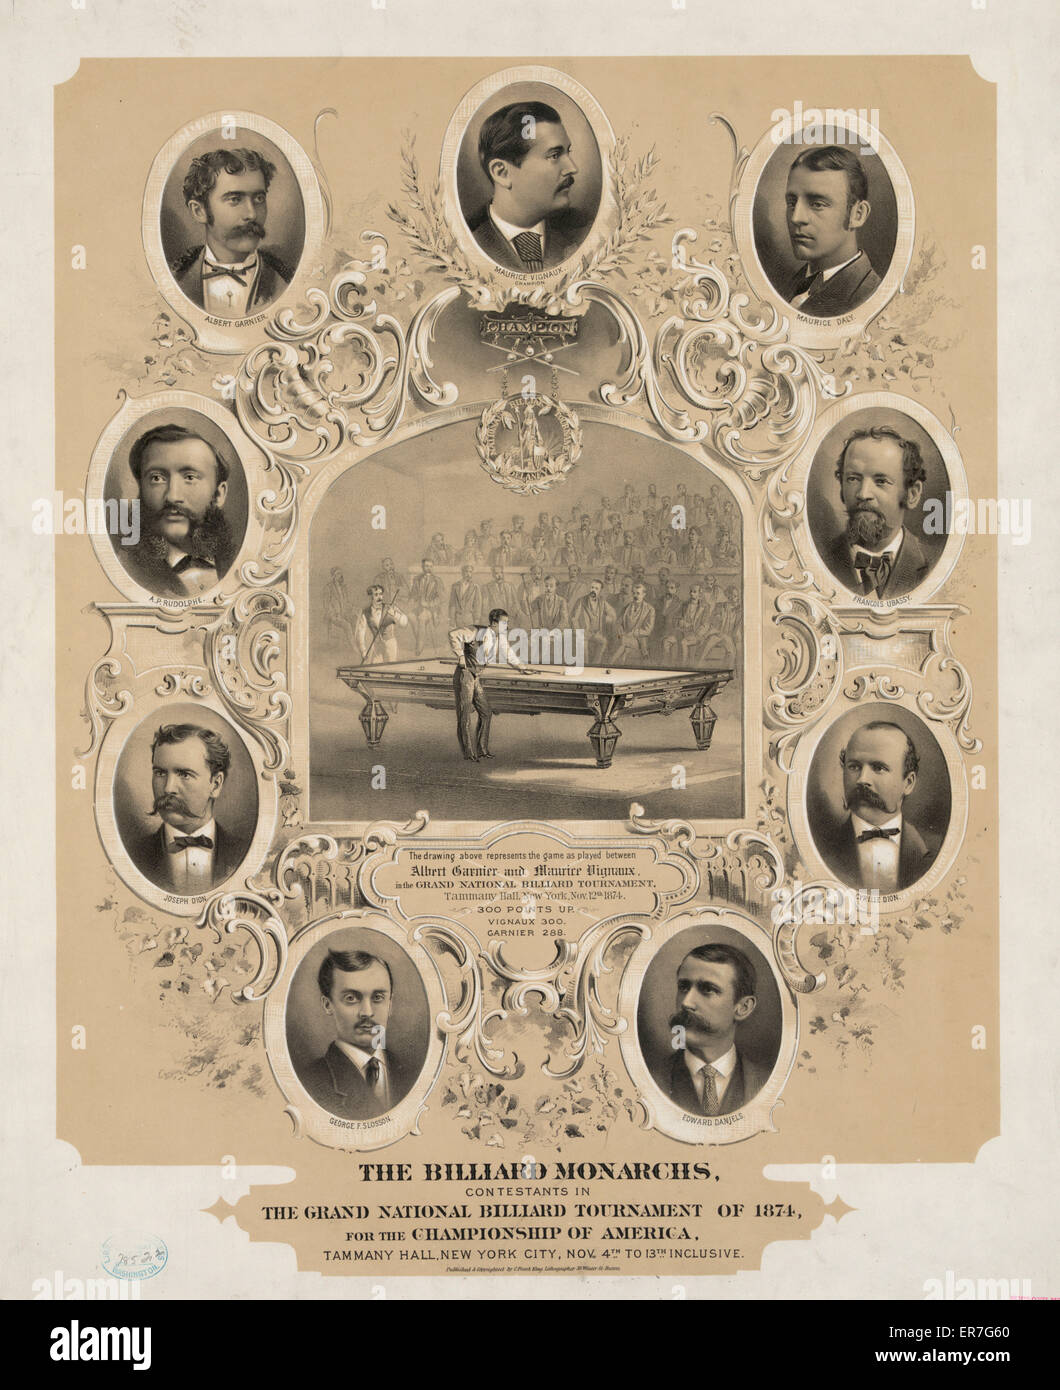 Los monarcas de billar, los concursantes en el Torneo de Billar grand national de 1874, por el campeonato de los Estados Unidos. Fecha c1875. Foto de stock